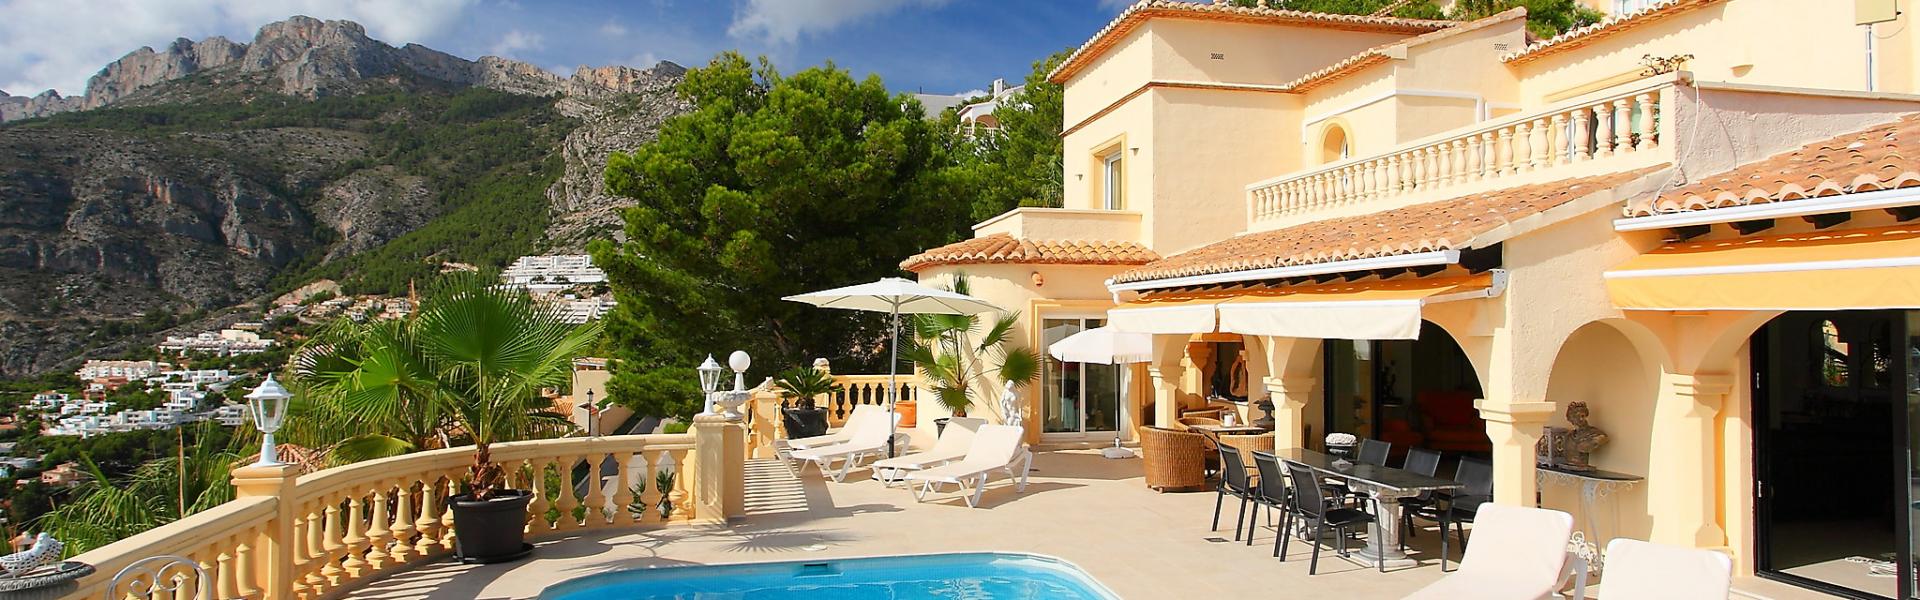 Vakantiehuis in Spanje met zwembad - HomeToGo